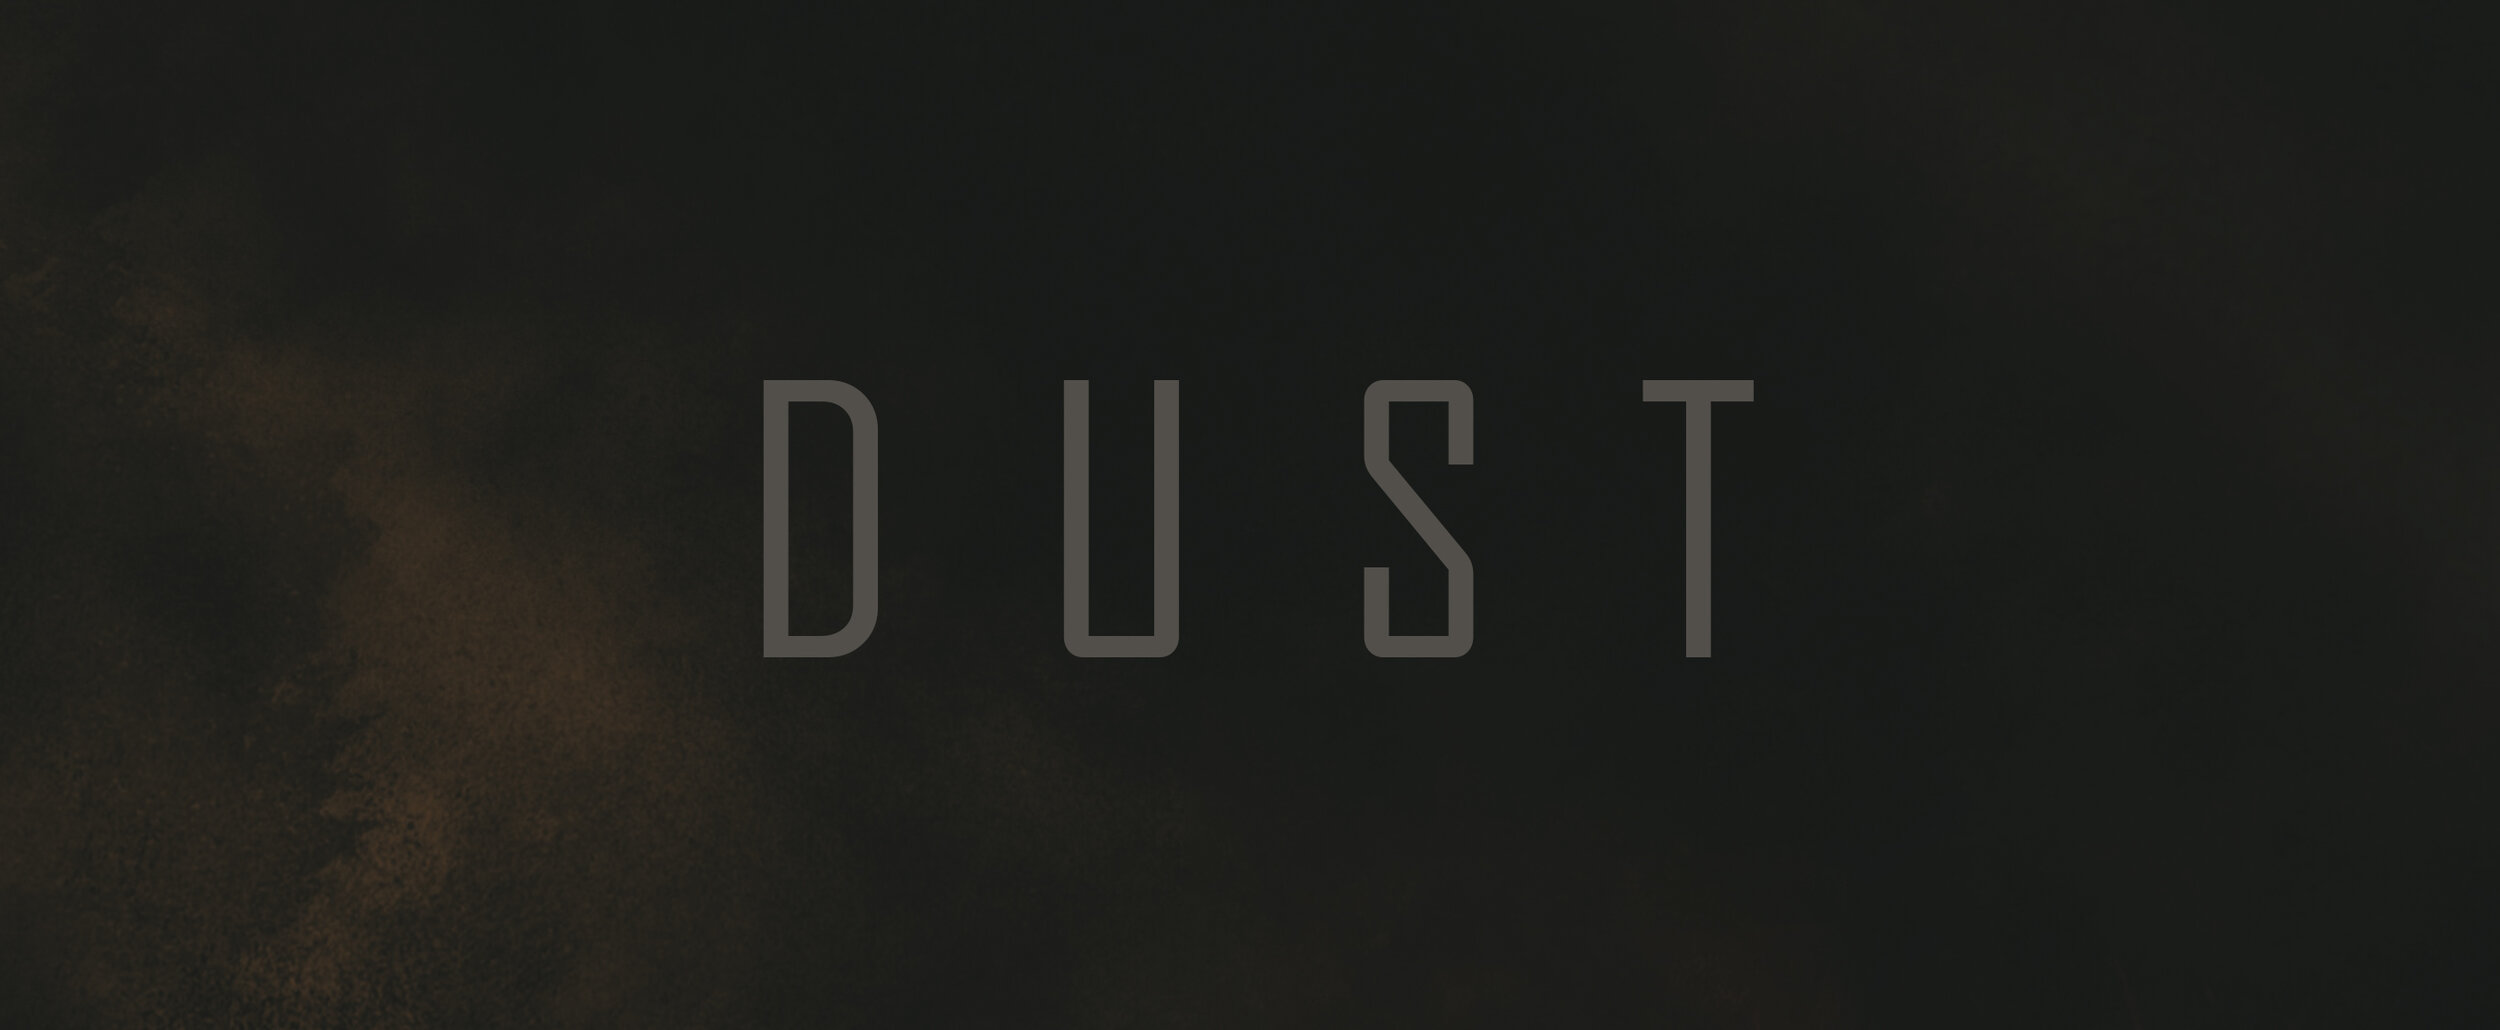 Dust.jpg